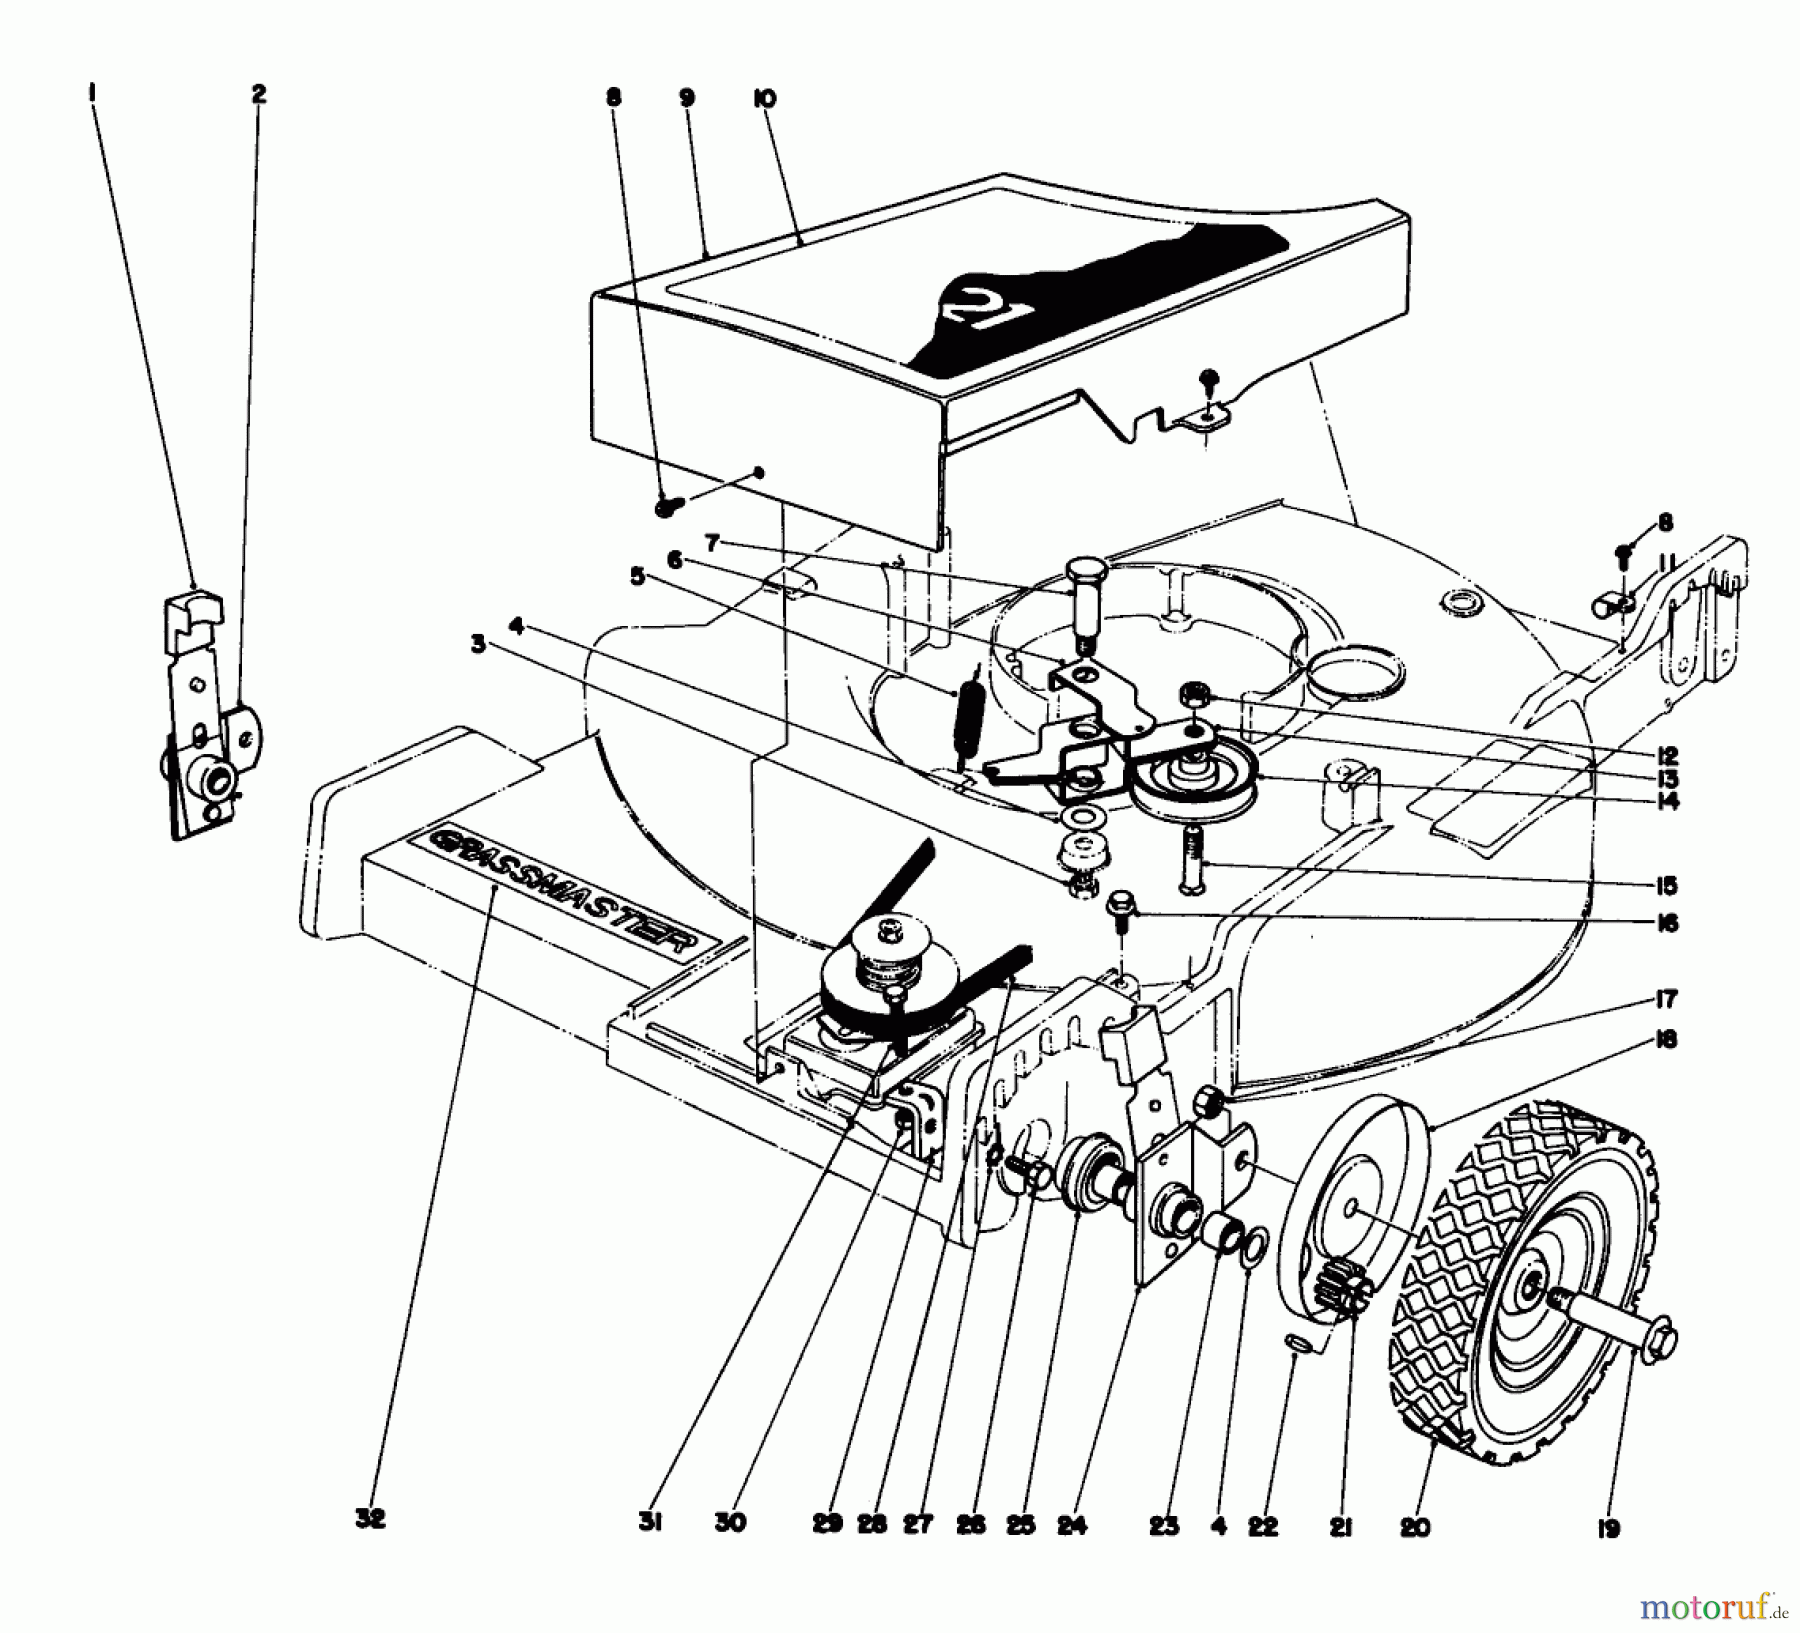  Toro Neu Mowers, Walk-Behind Seite 1 20550 - Toro Lawnmower, 1975 (5000001-5999999) FRONT WHEEL AND PIVOT ARM ASSEMBLY